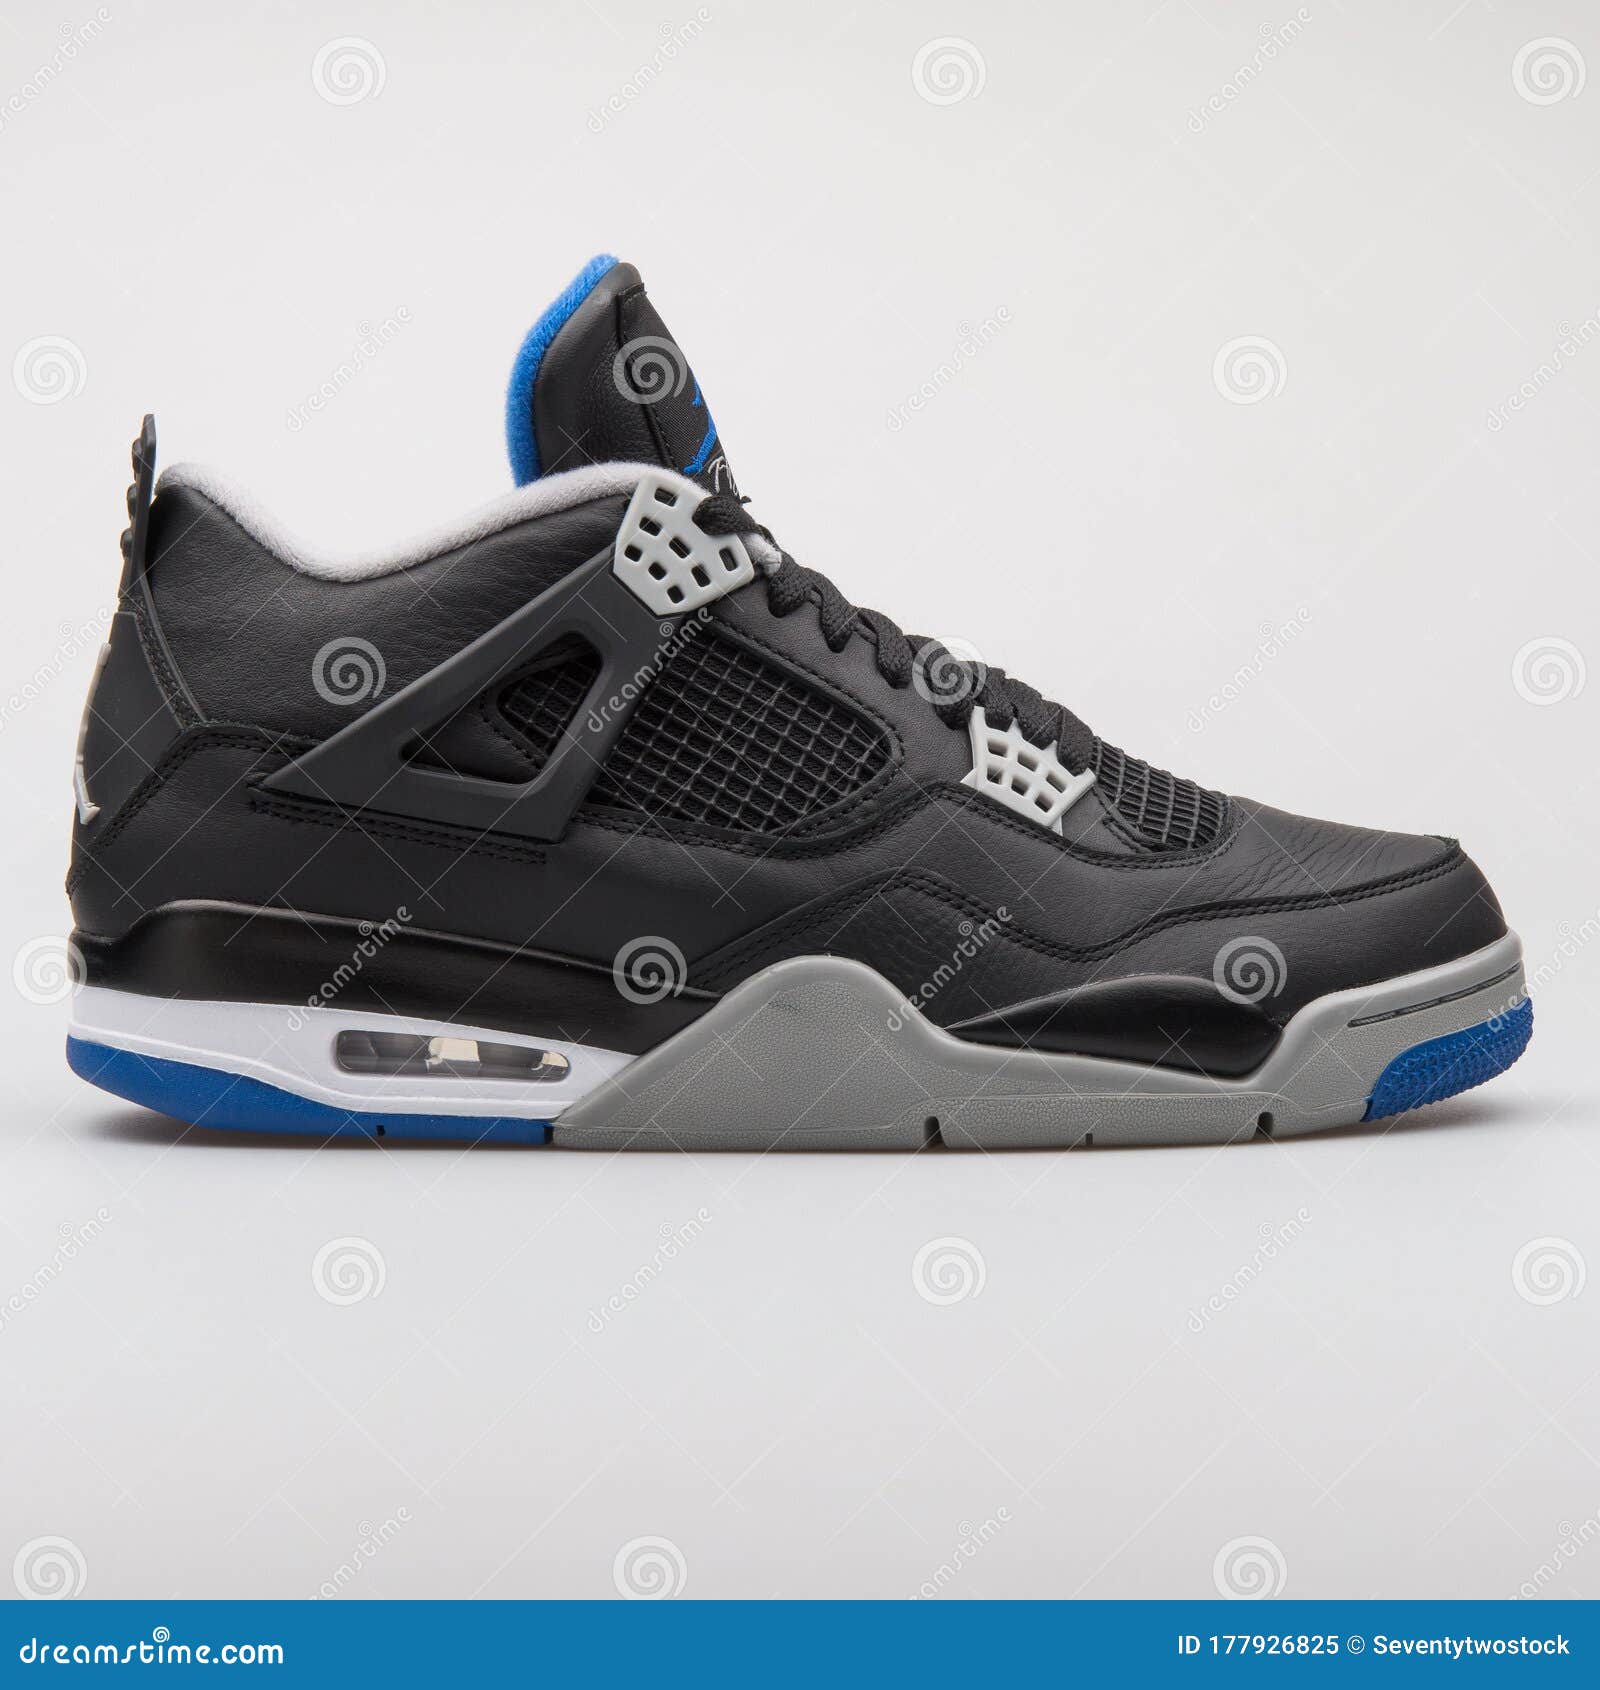 Nike Air Jordan 4 Zapatillas Retro Gris Negro Y Azul Real Imagen editorial Imagen calzado, jordania: 177926825